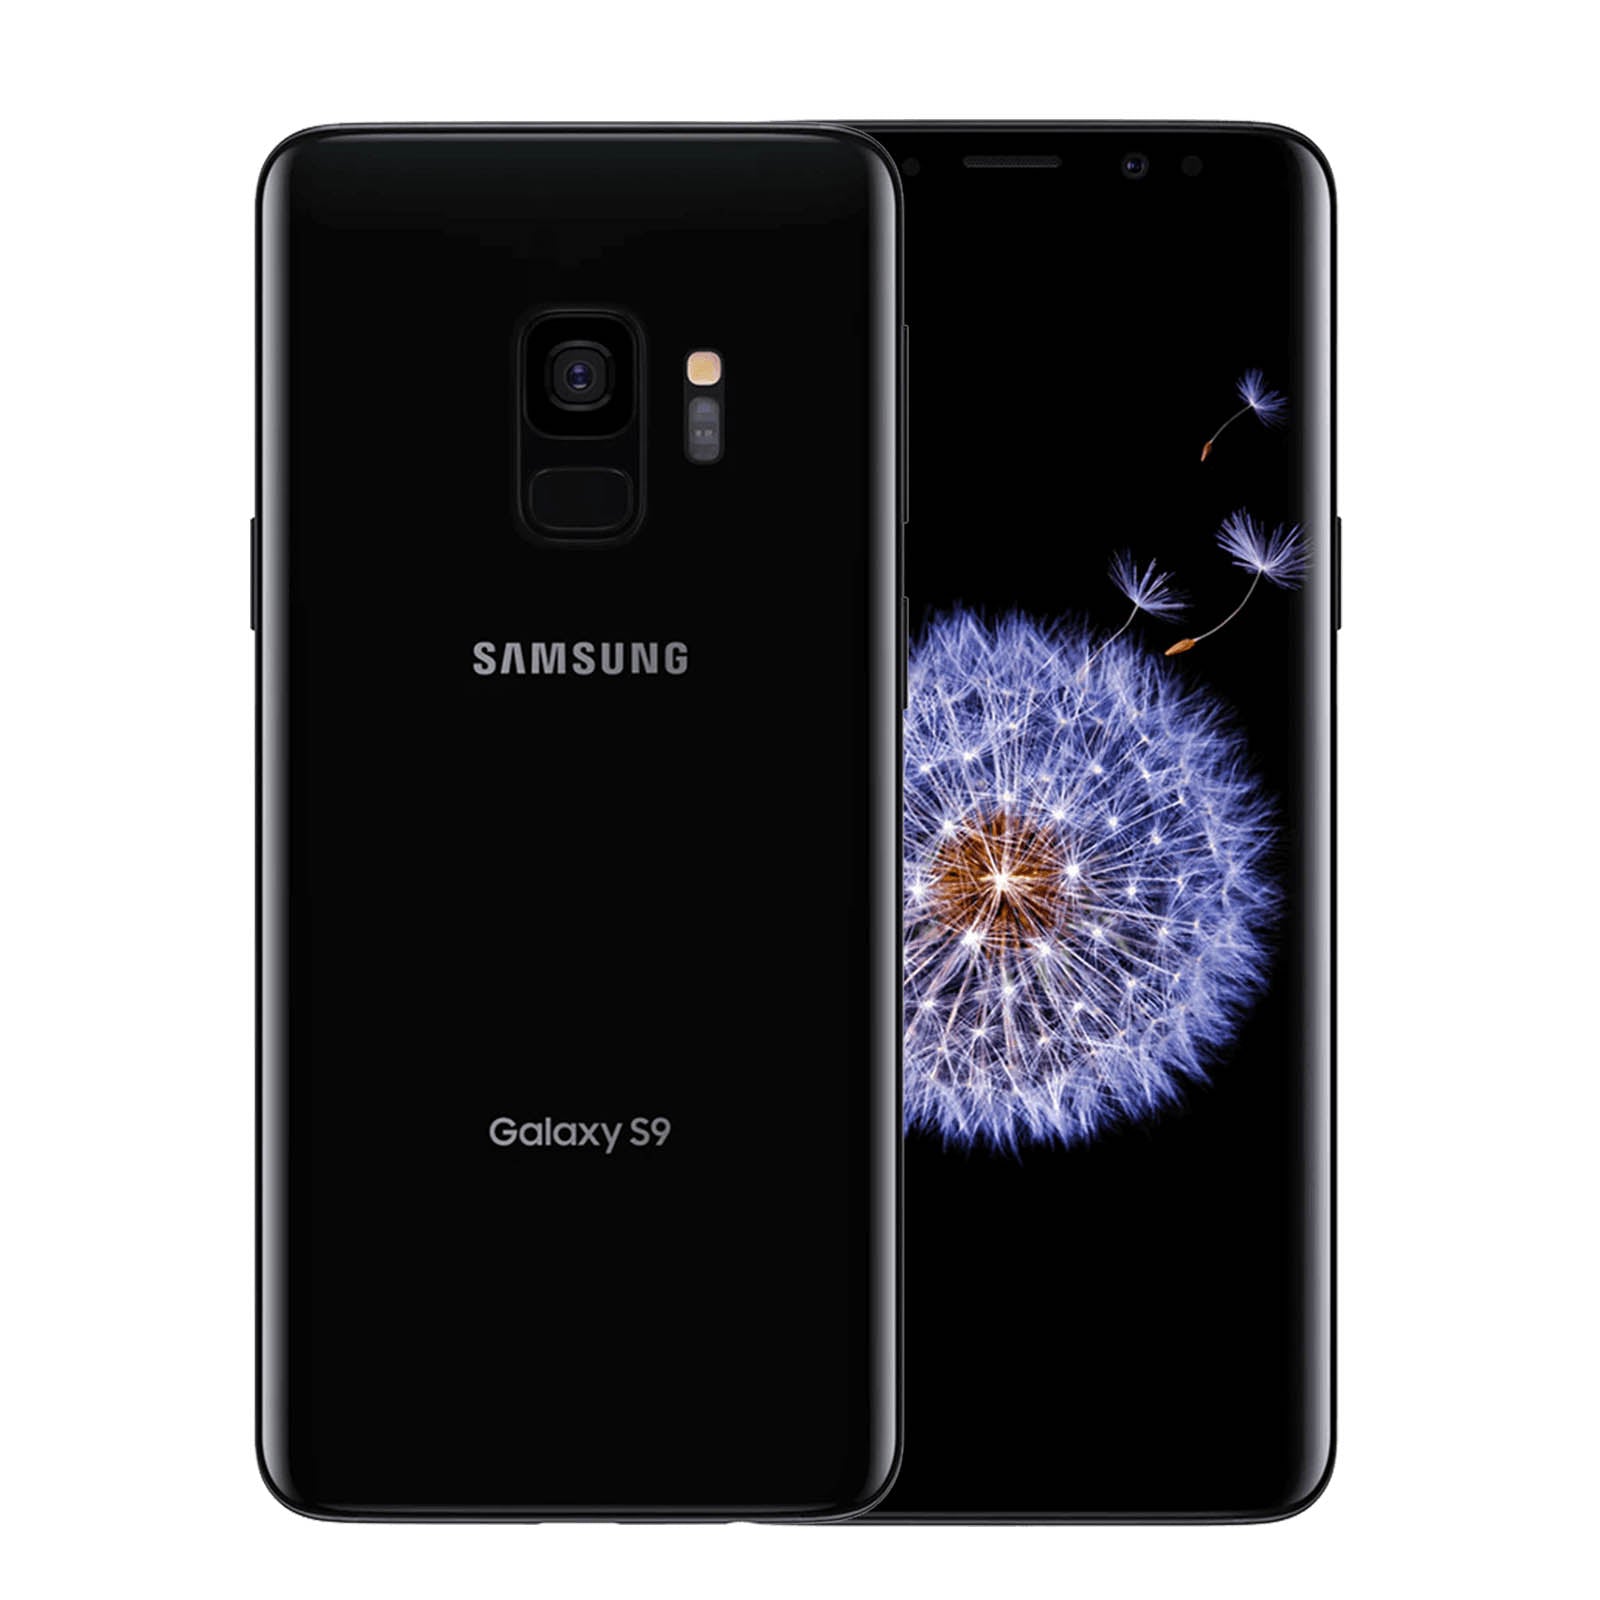 Samsung Galaxy S9 256GB Black Good - Unlocked